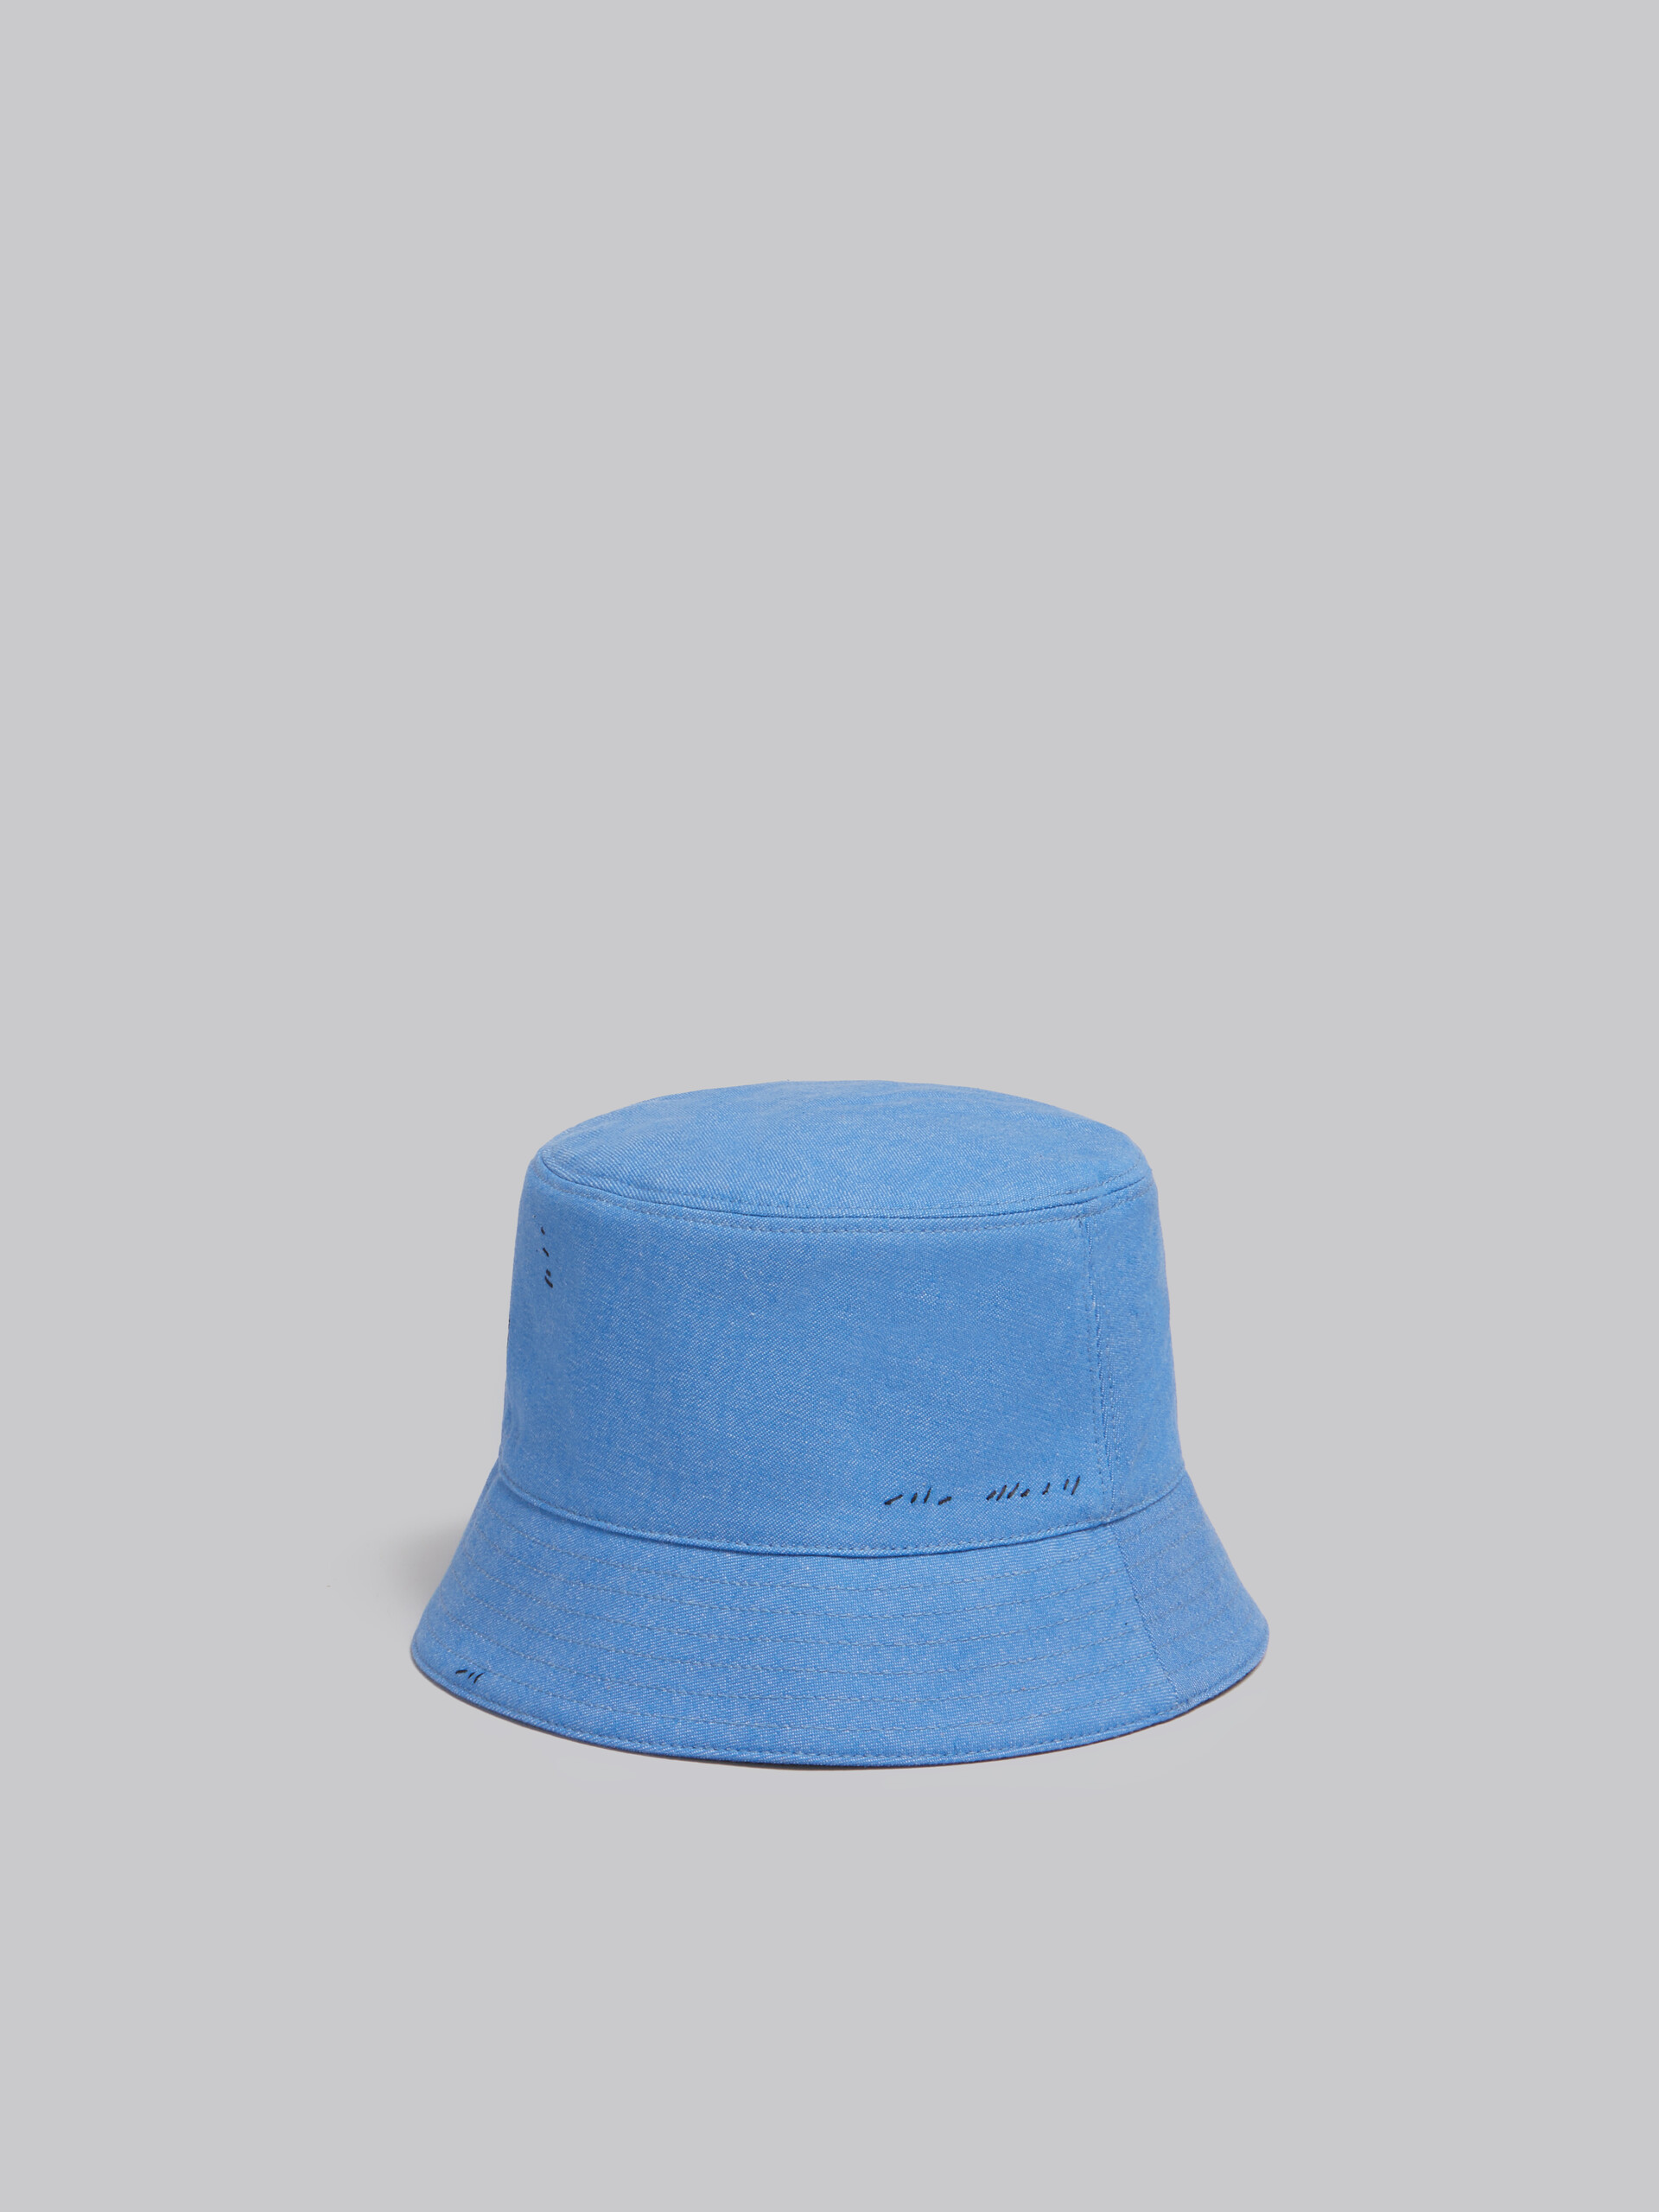 Blauer Fischerhut aus Denim mit Marni-Flicken - Hüte - Image 3